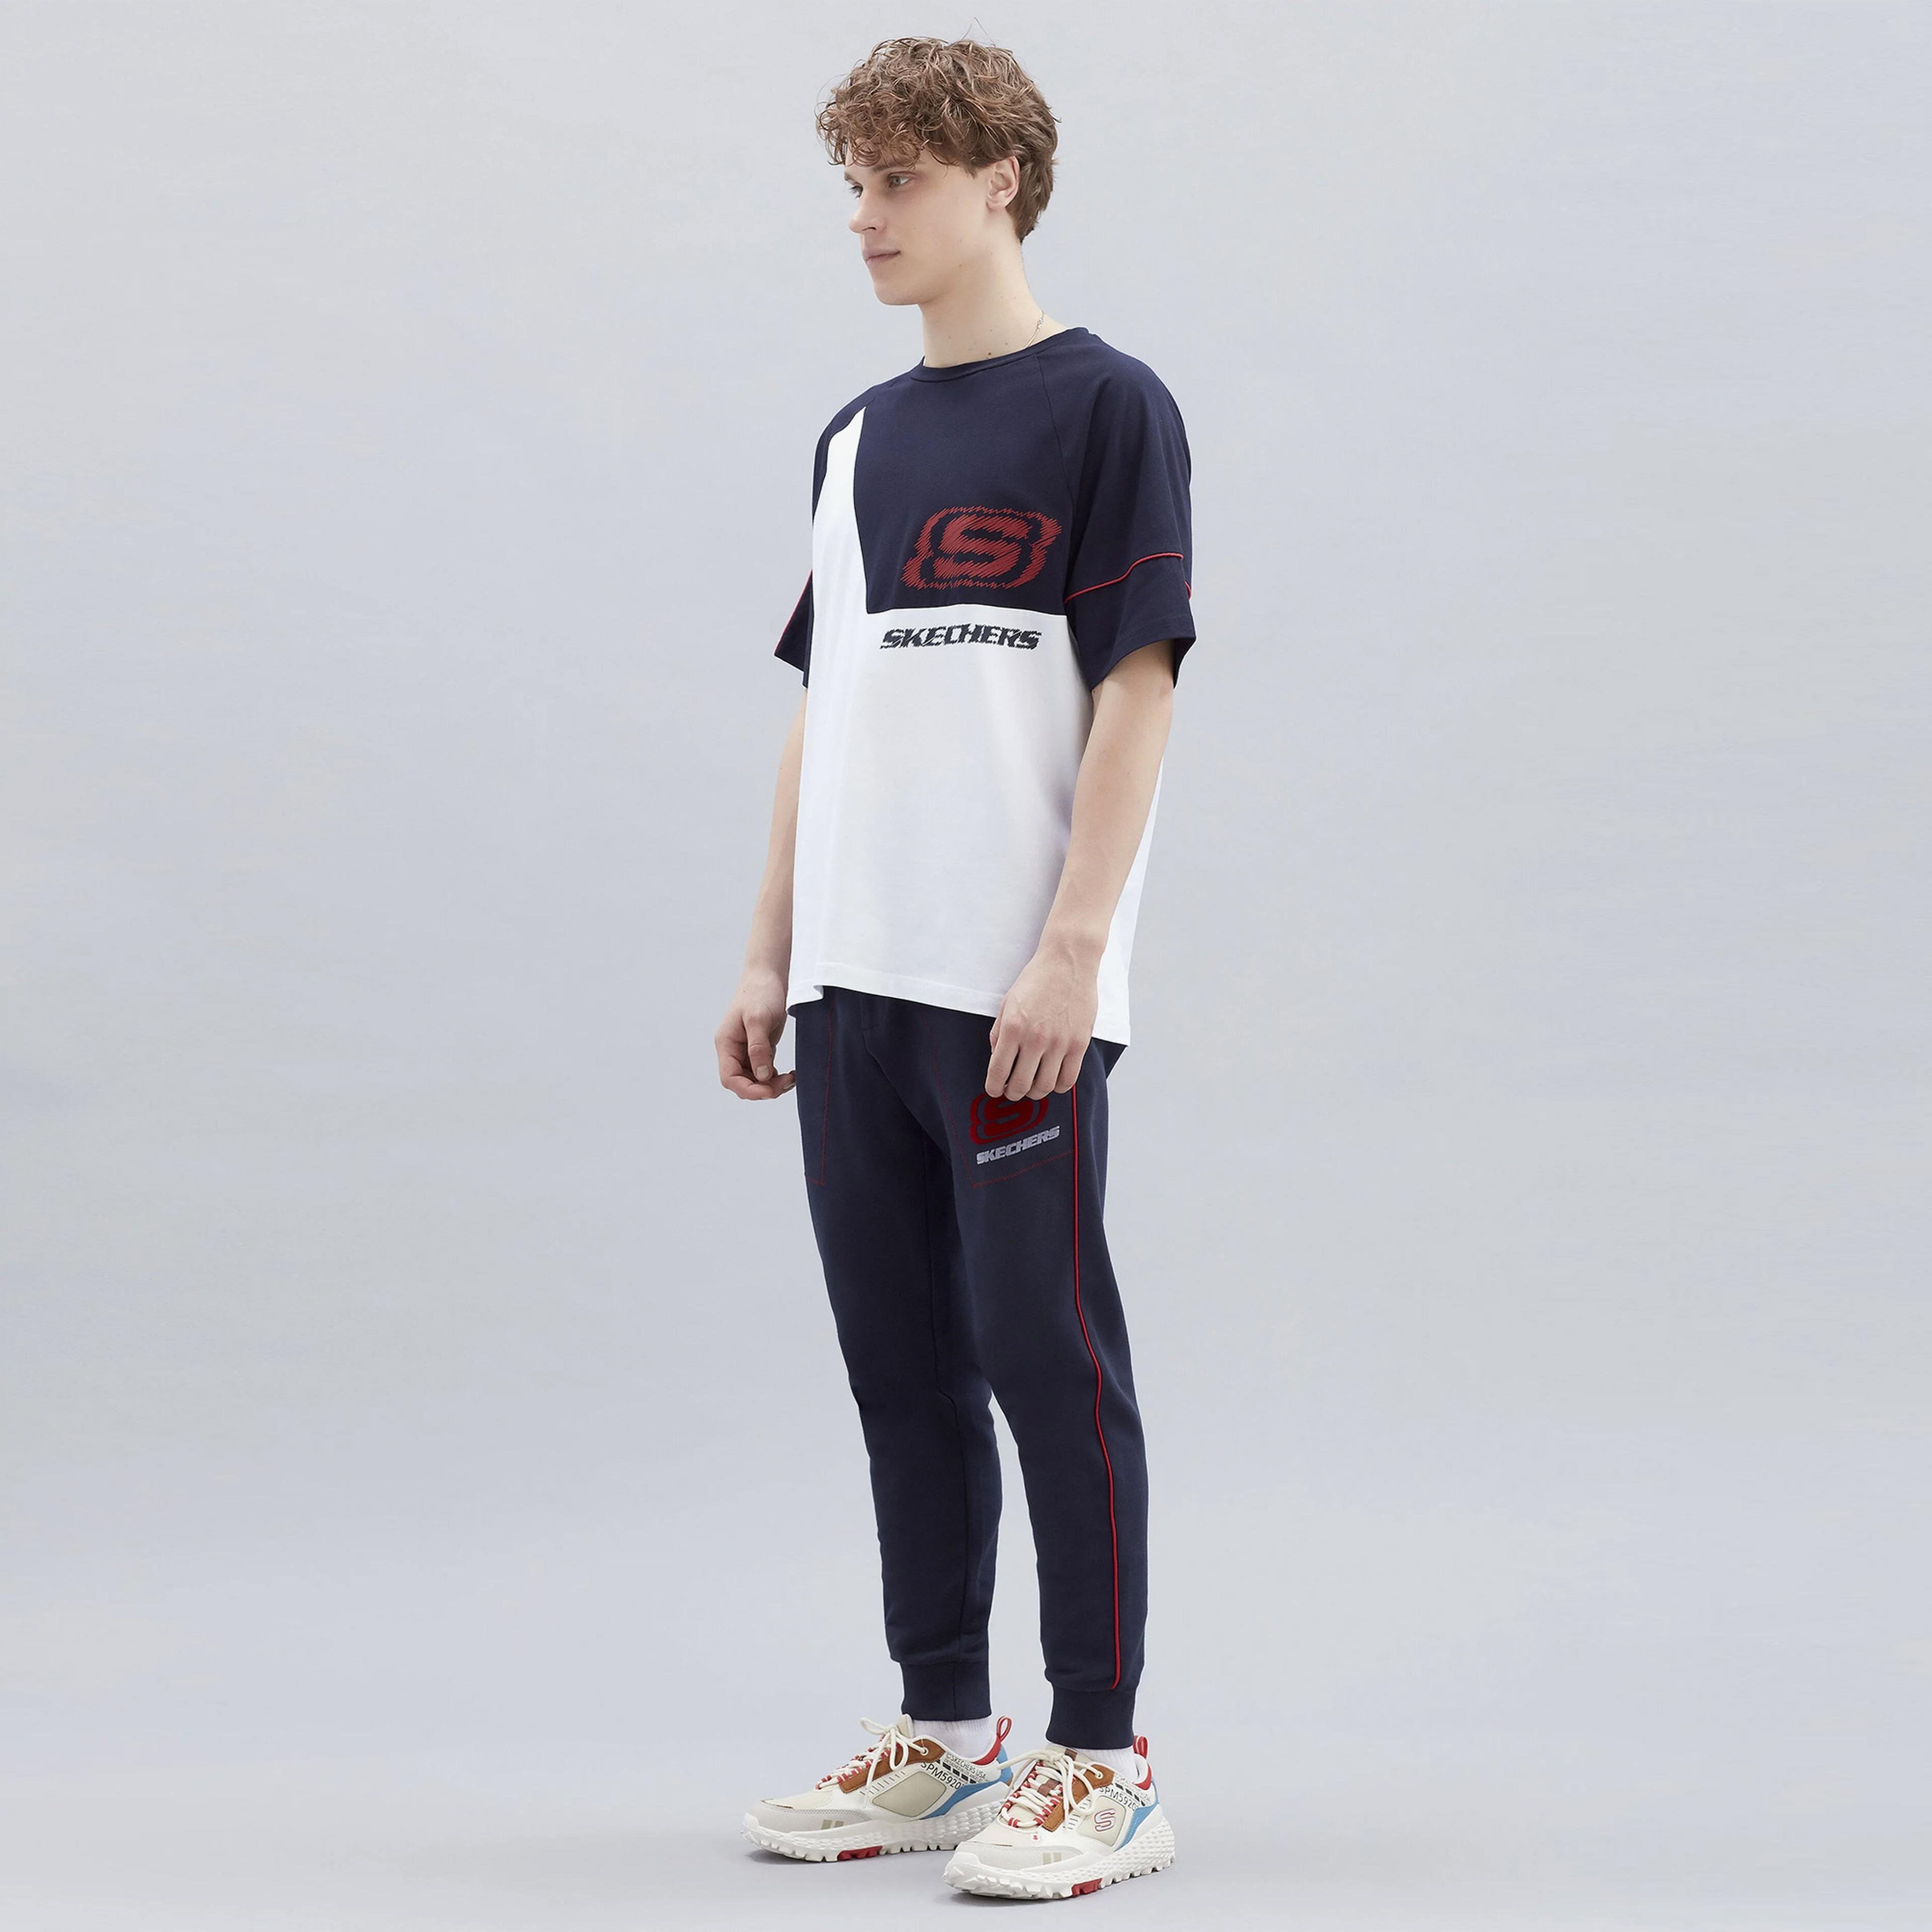 Skechers Capsule Coll Asymmetric Erkek Lacivert T-Shirt